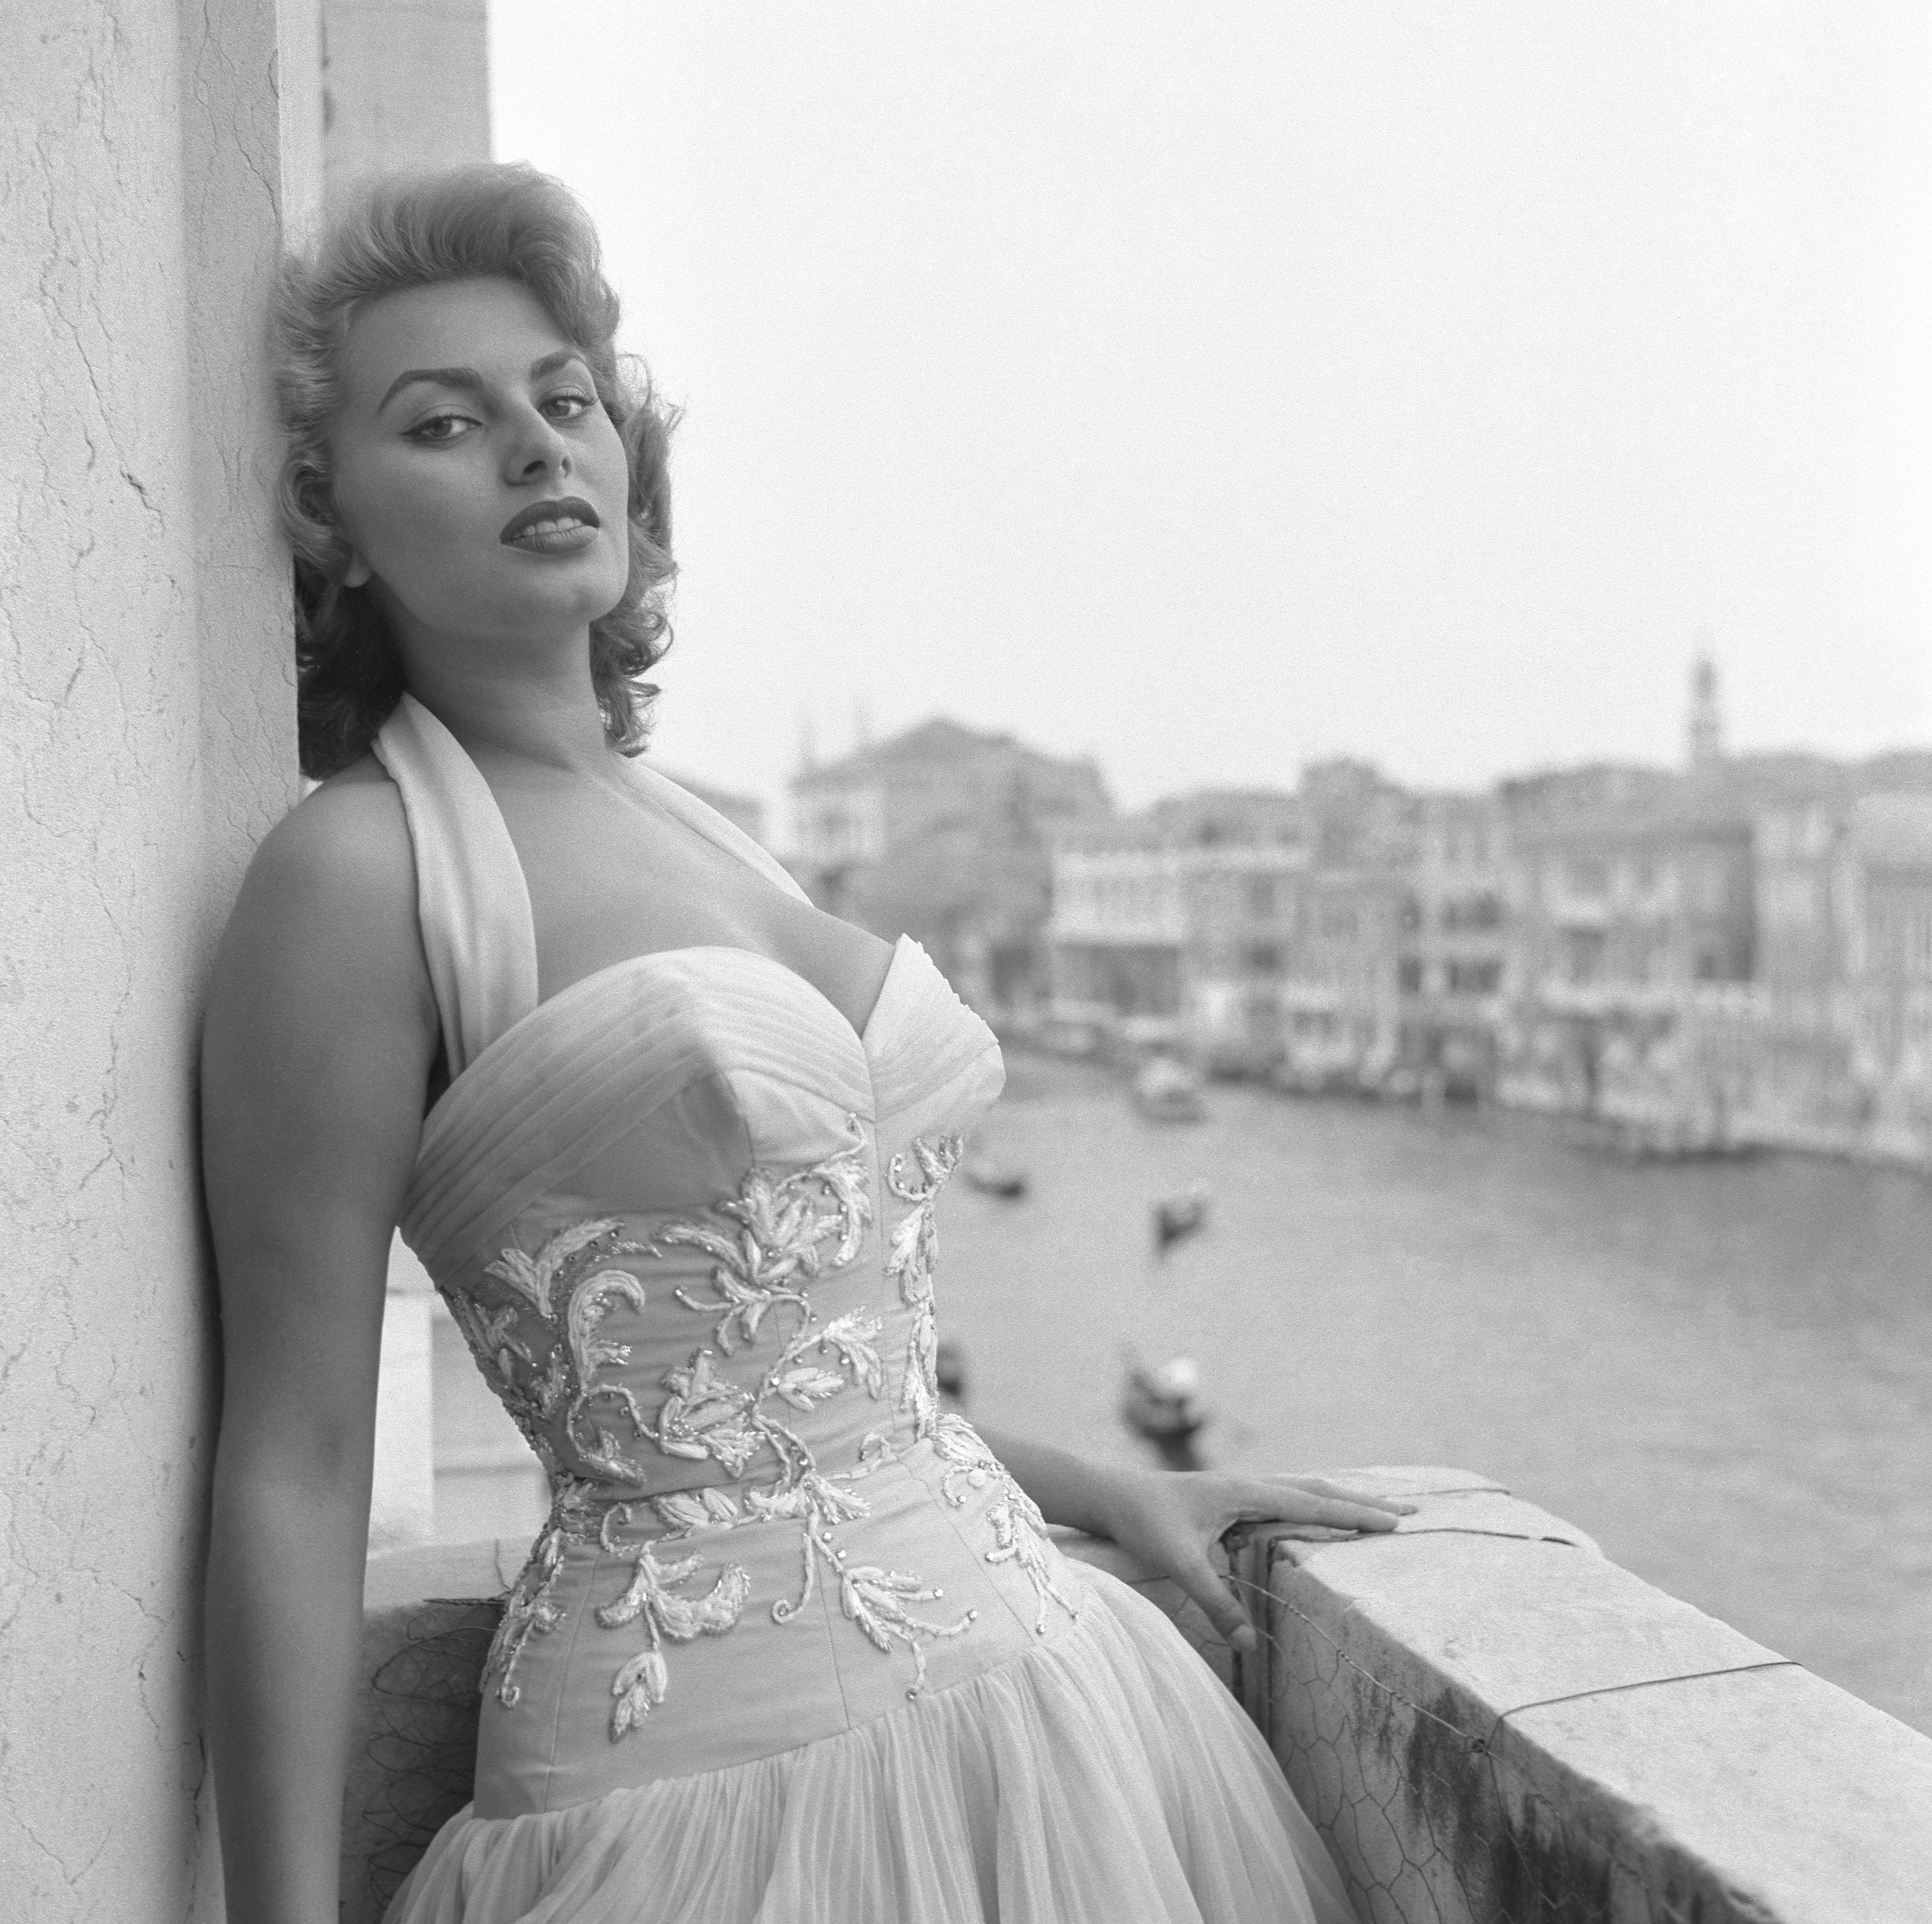 Η ιταλίδα ηθοποιός Sophia Loren στο Canal Grande, Βενετία, 1955 © Getty Images/ Archivio Cameraphoto Epoche